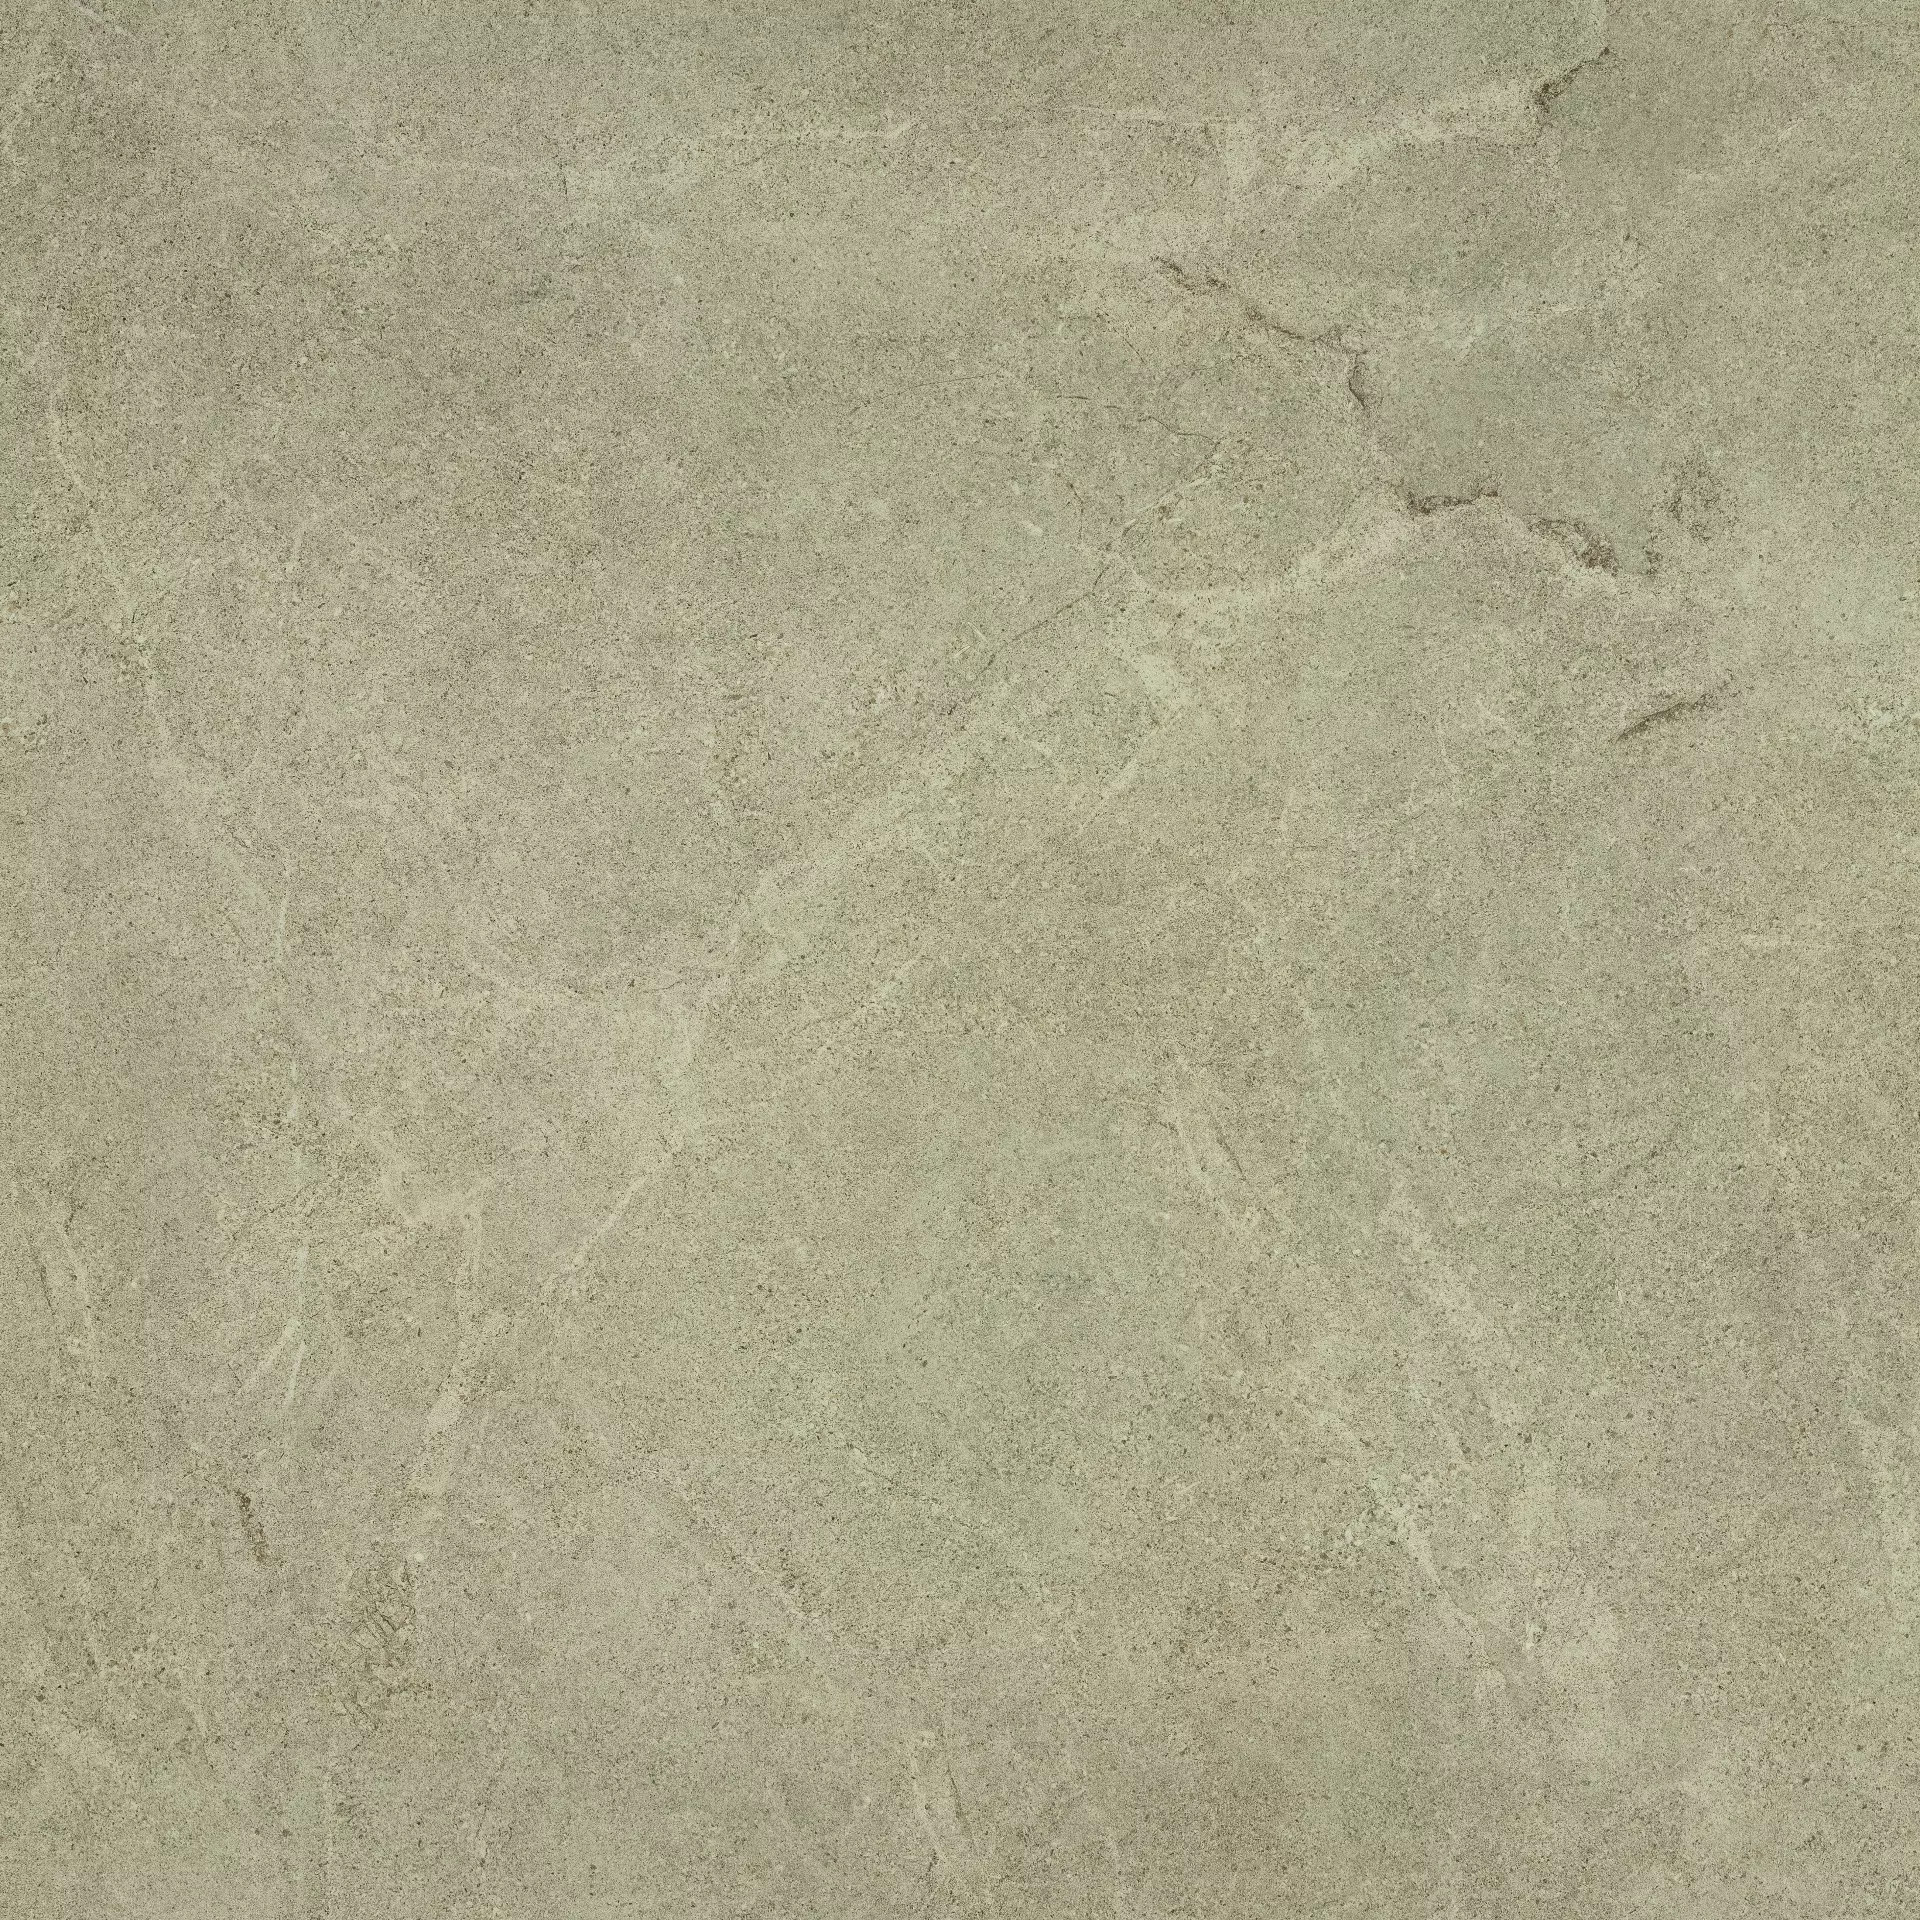 Bodenfliese,Wandfliese Cercom Archistone Sand Naturale Sand 1081720 natur 120x120cm rektifiziert 9,5mm